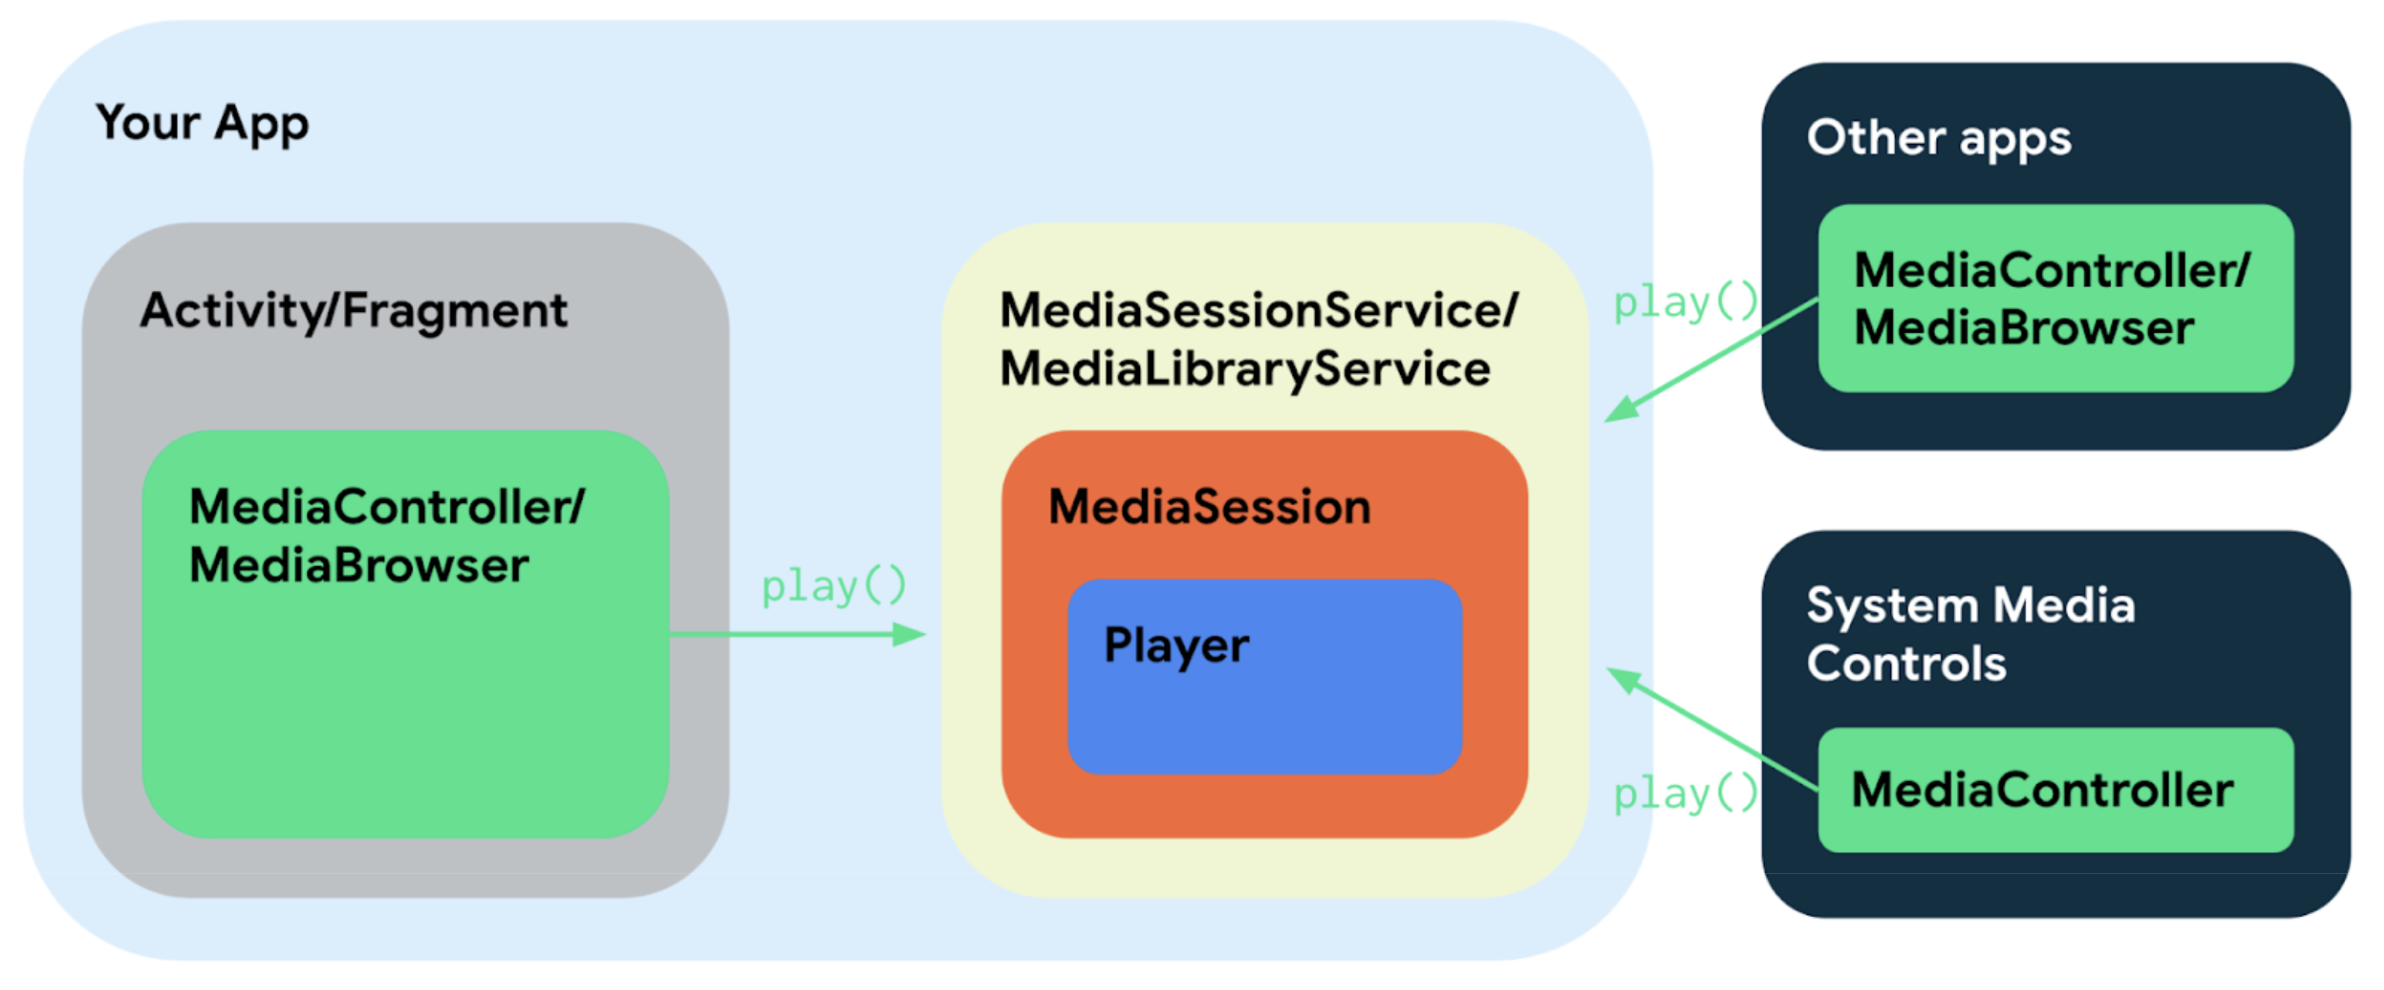 由于使用 Media3 的媒体应用的不同组件需要共享接口和类，因此这些组件可通过几种简单的方式连接在一起。